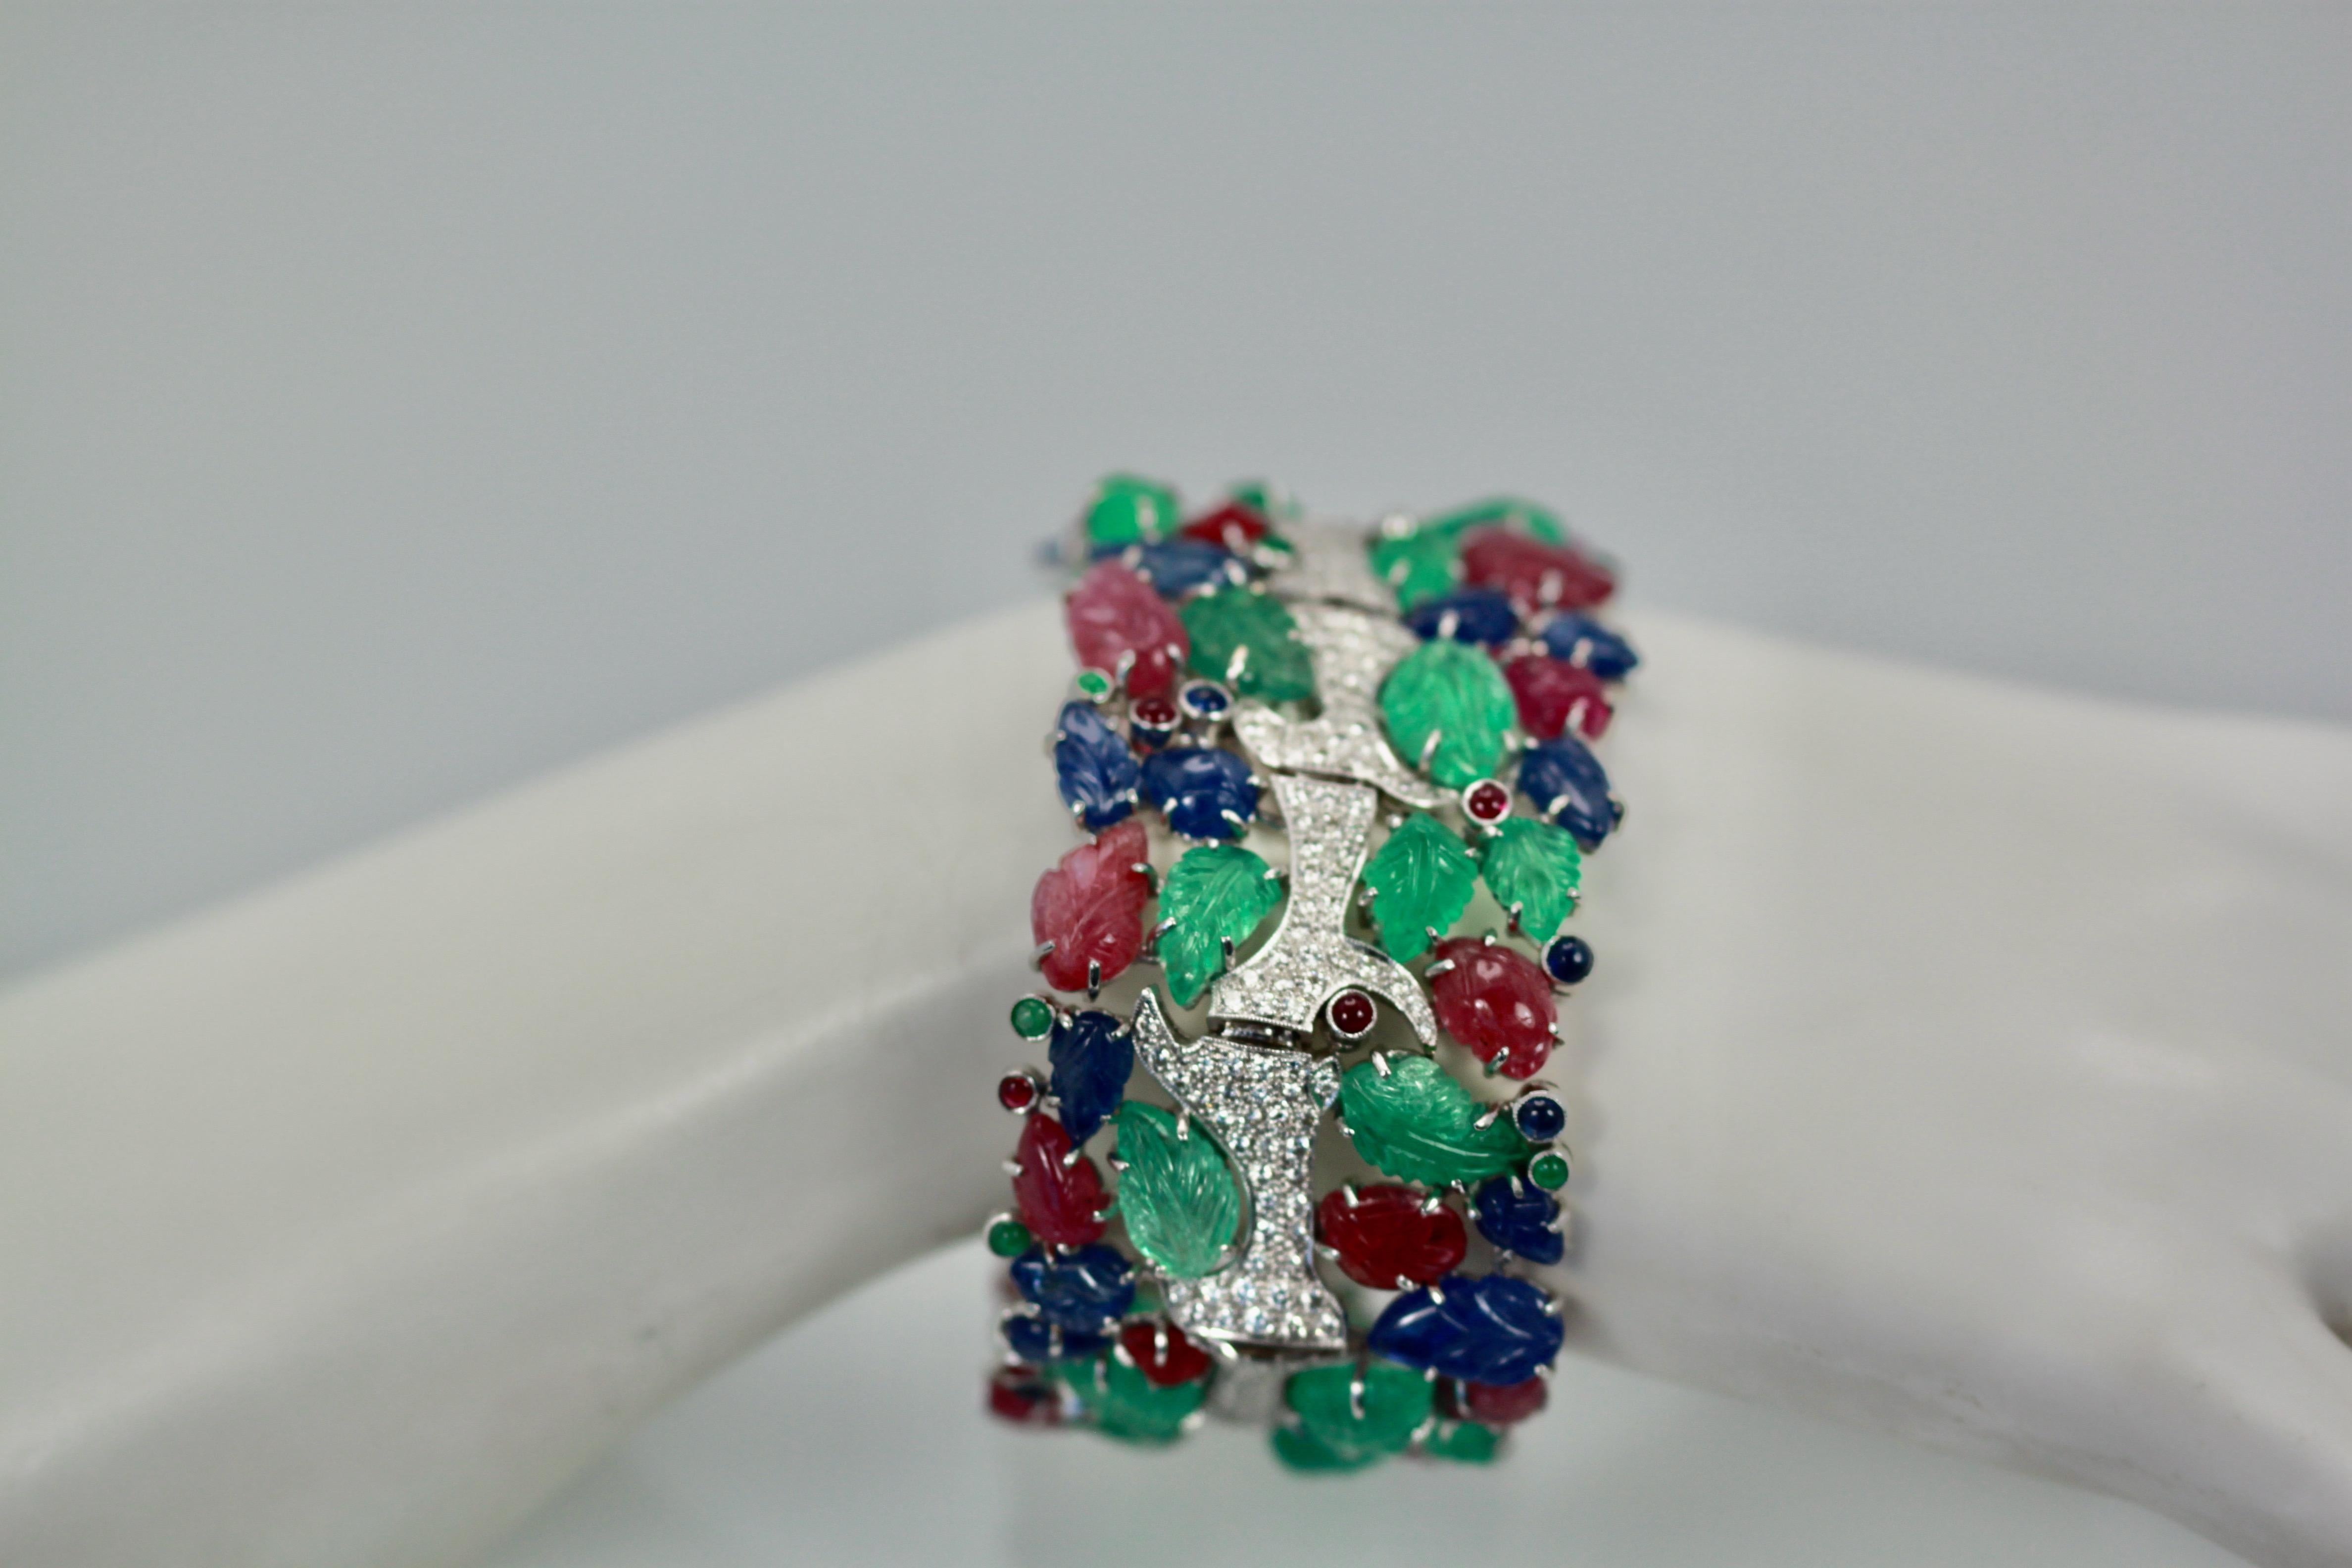 Brilliant Cut Tutti Frutti Carved Stones Diamond Bracelet 18 Karat Wide For Sale